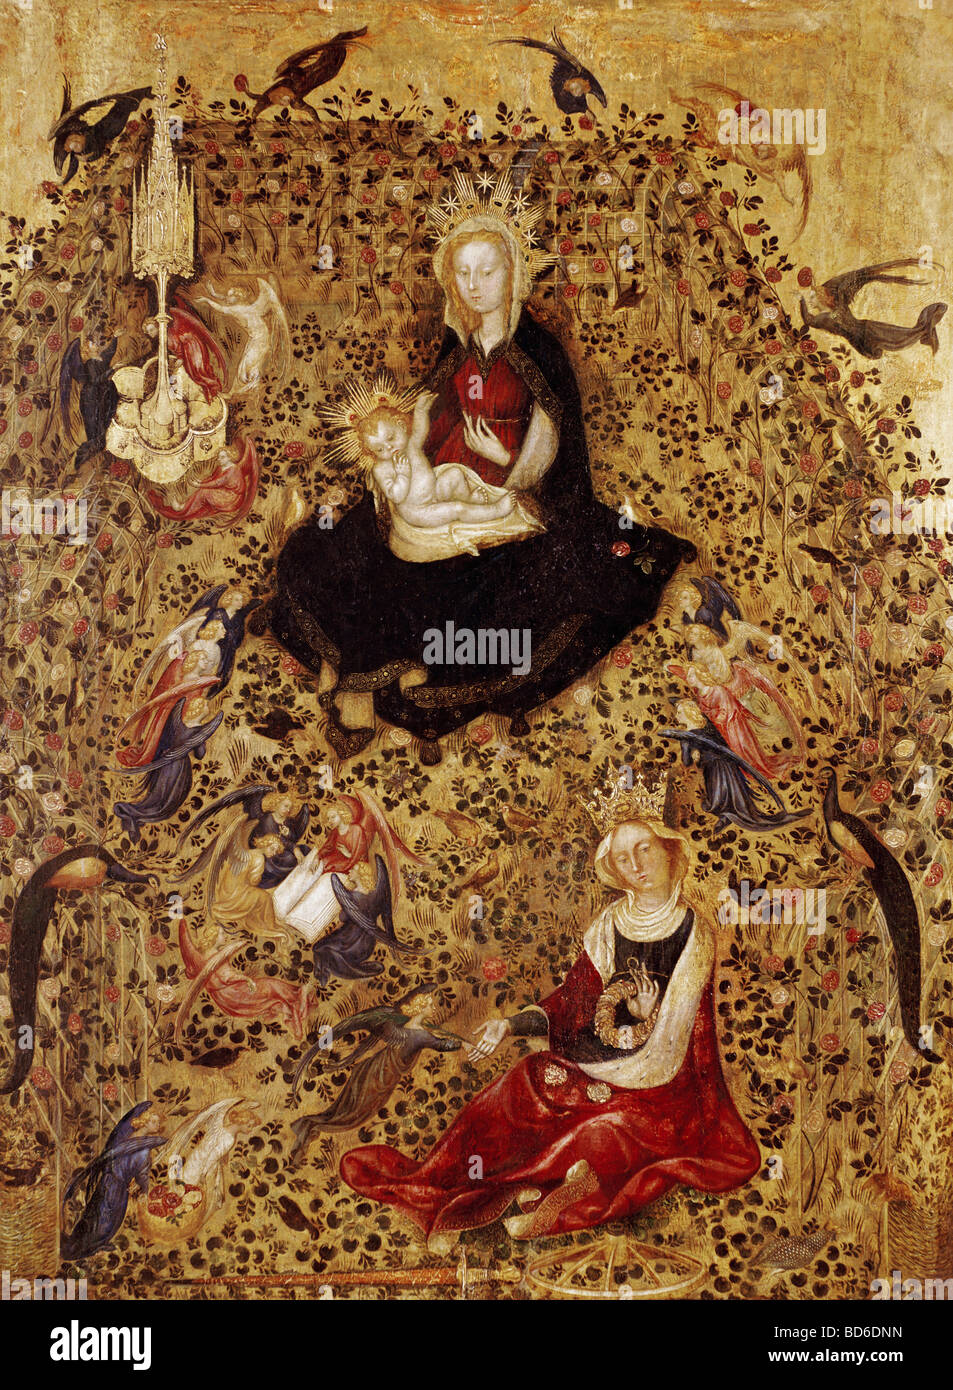 Beaux-arts, Vérone, Stefano da (1375 - 1438), peinture, 'Madonna del Roseto', Musée de Castelvecchio, Vérone, Italie, Europe, 15t Banque D'Images